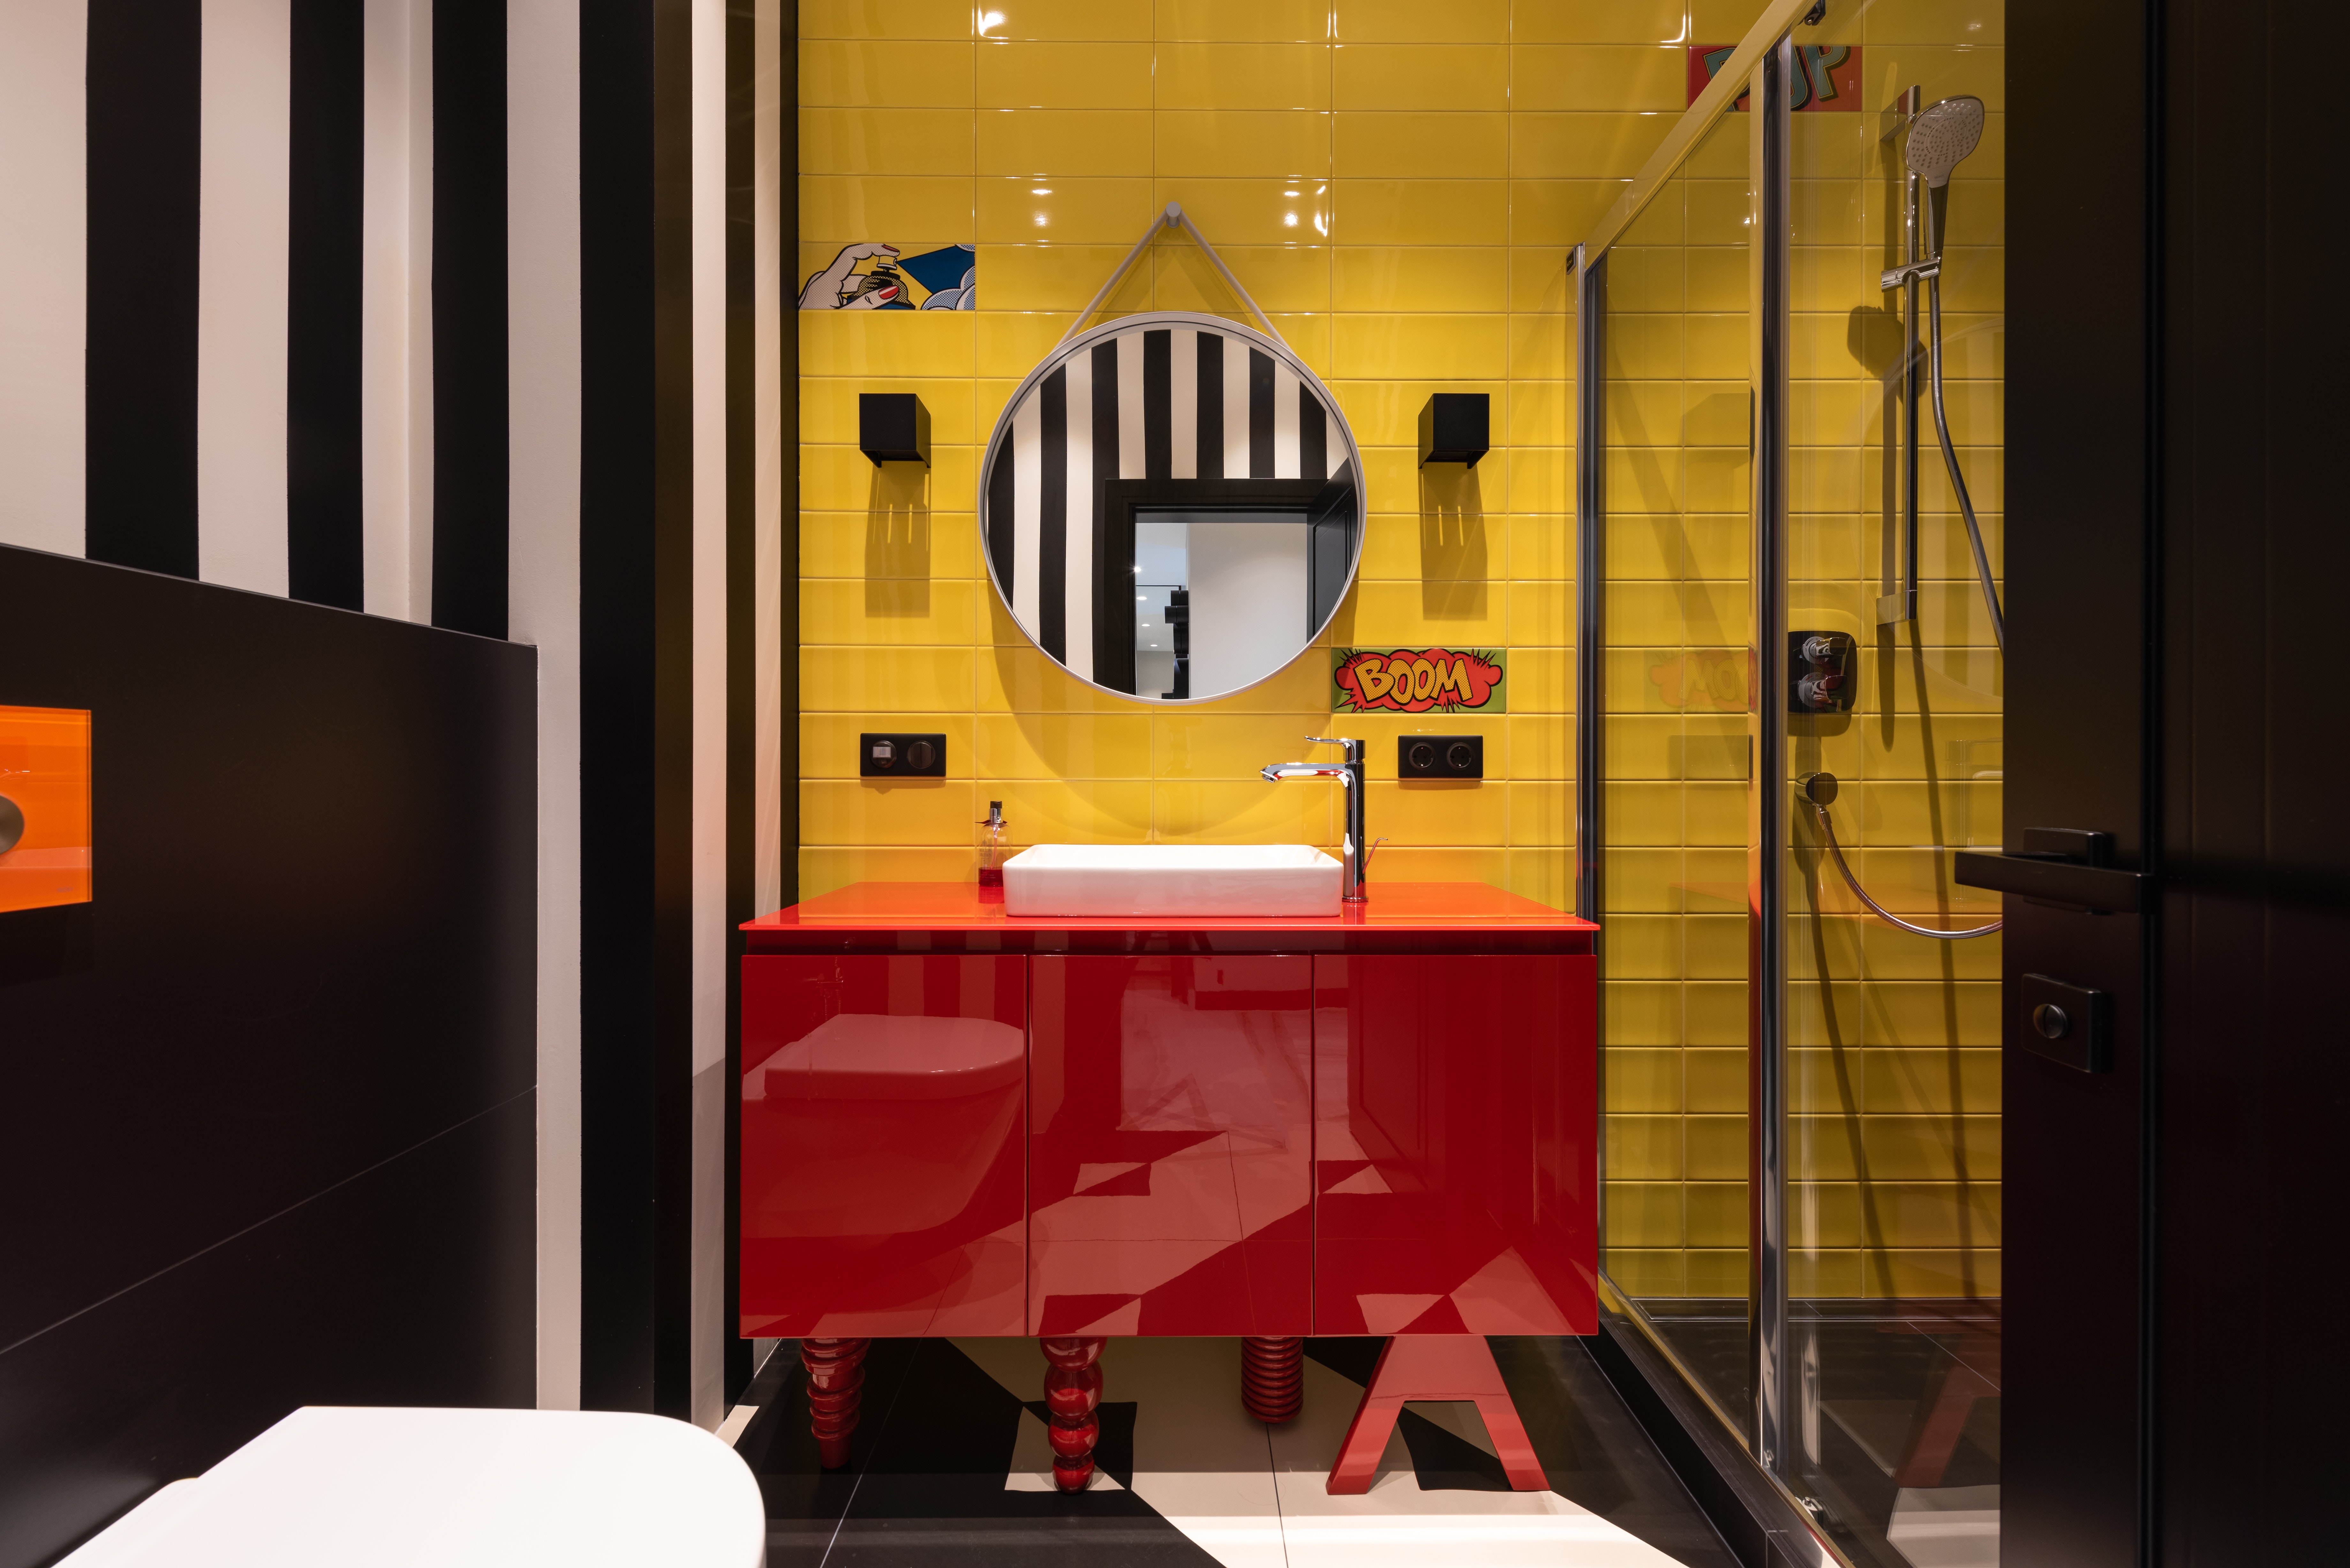 Štýlová kúpeľňa v sýtych farbách s červenou skrinkou